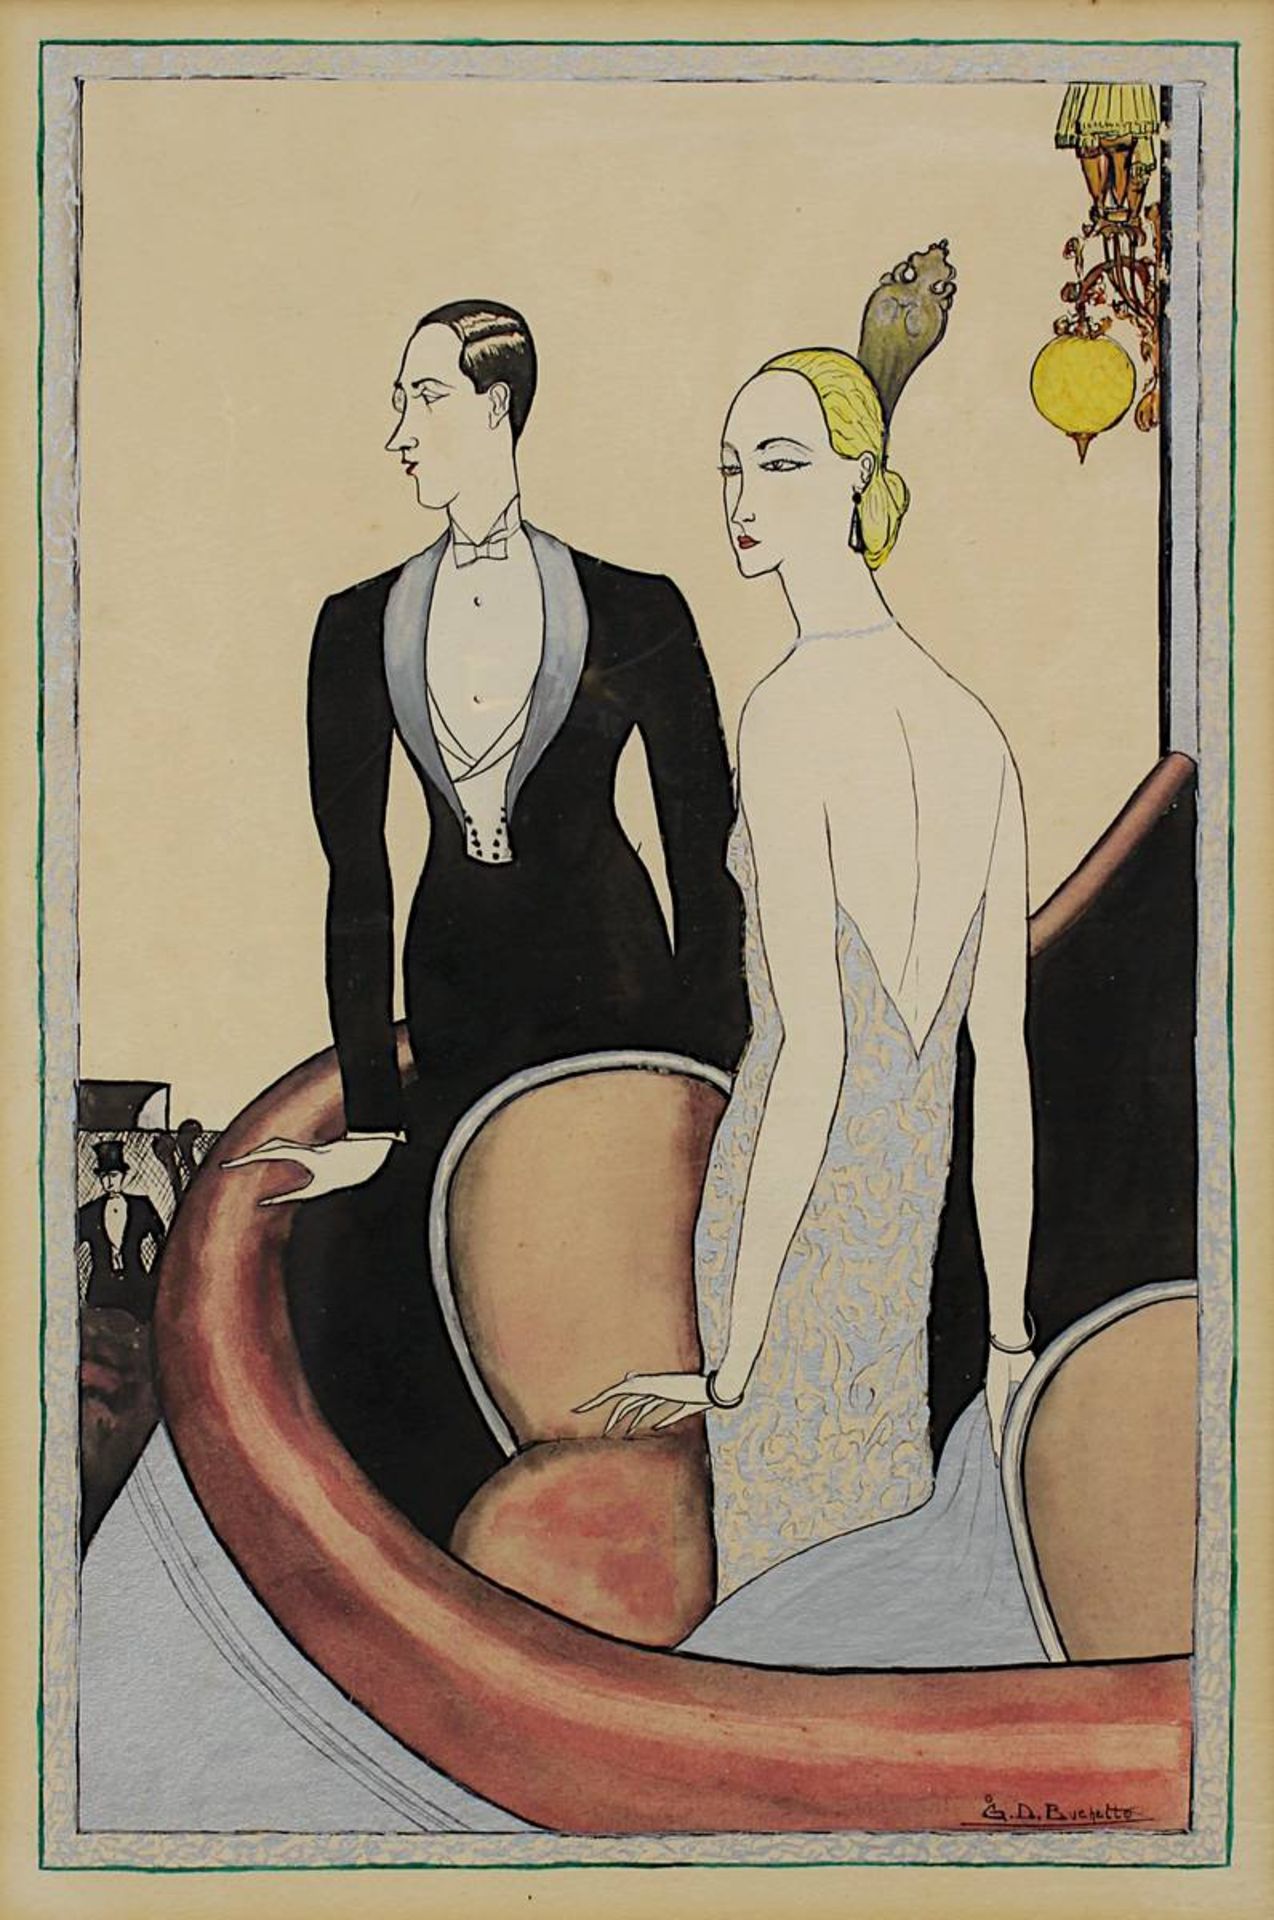 Buchetto, G. D. (Künstler um 1920/30), Darstellung eines eleganten Paares in einer Loge, Aquarell, - Image 2 of 3